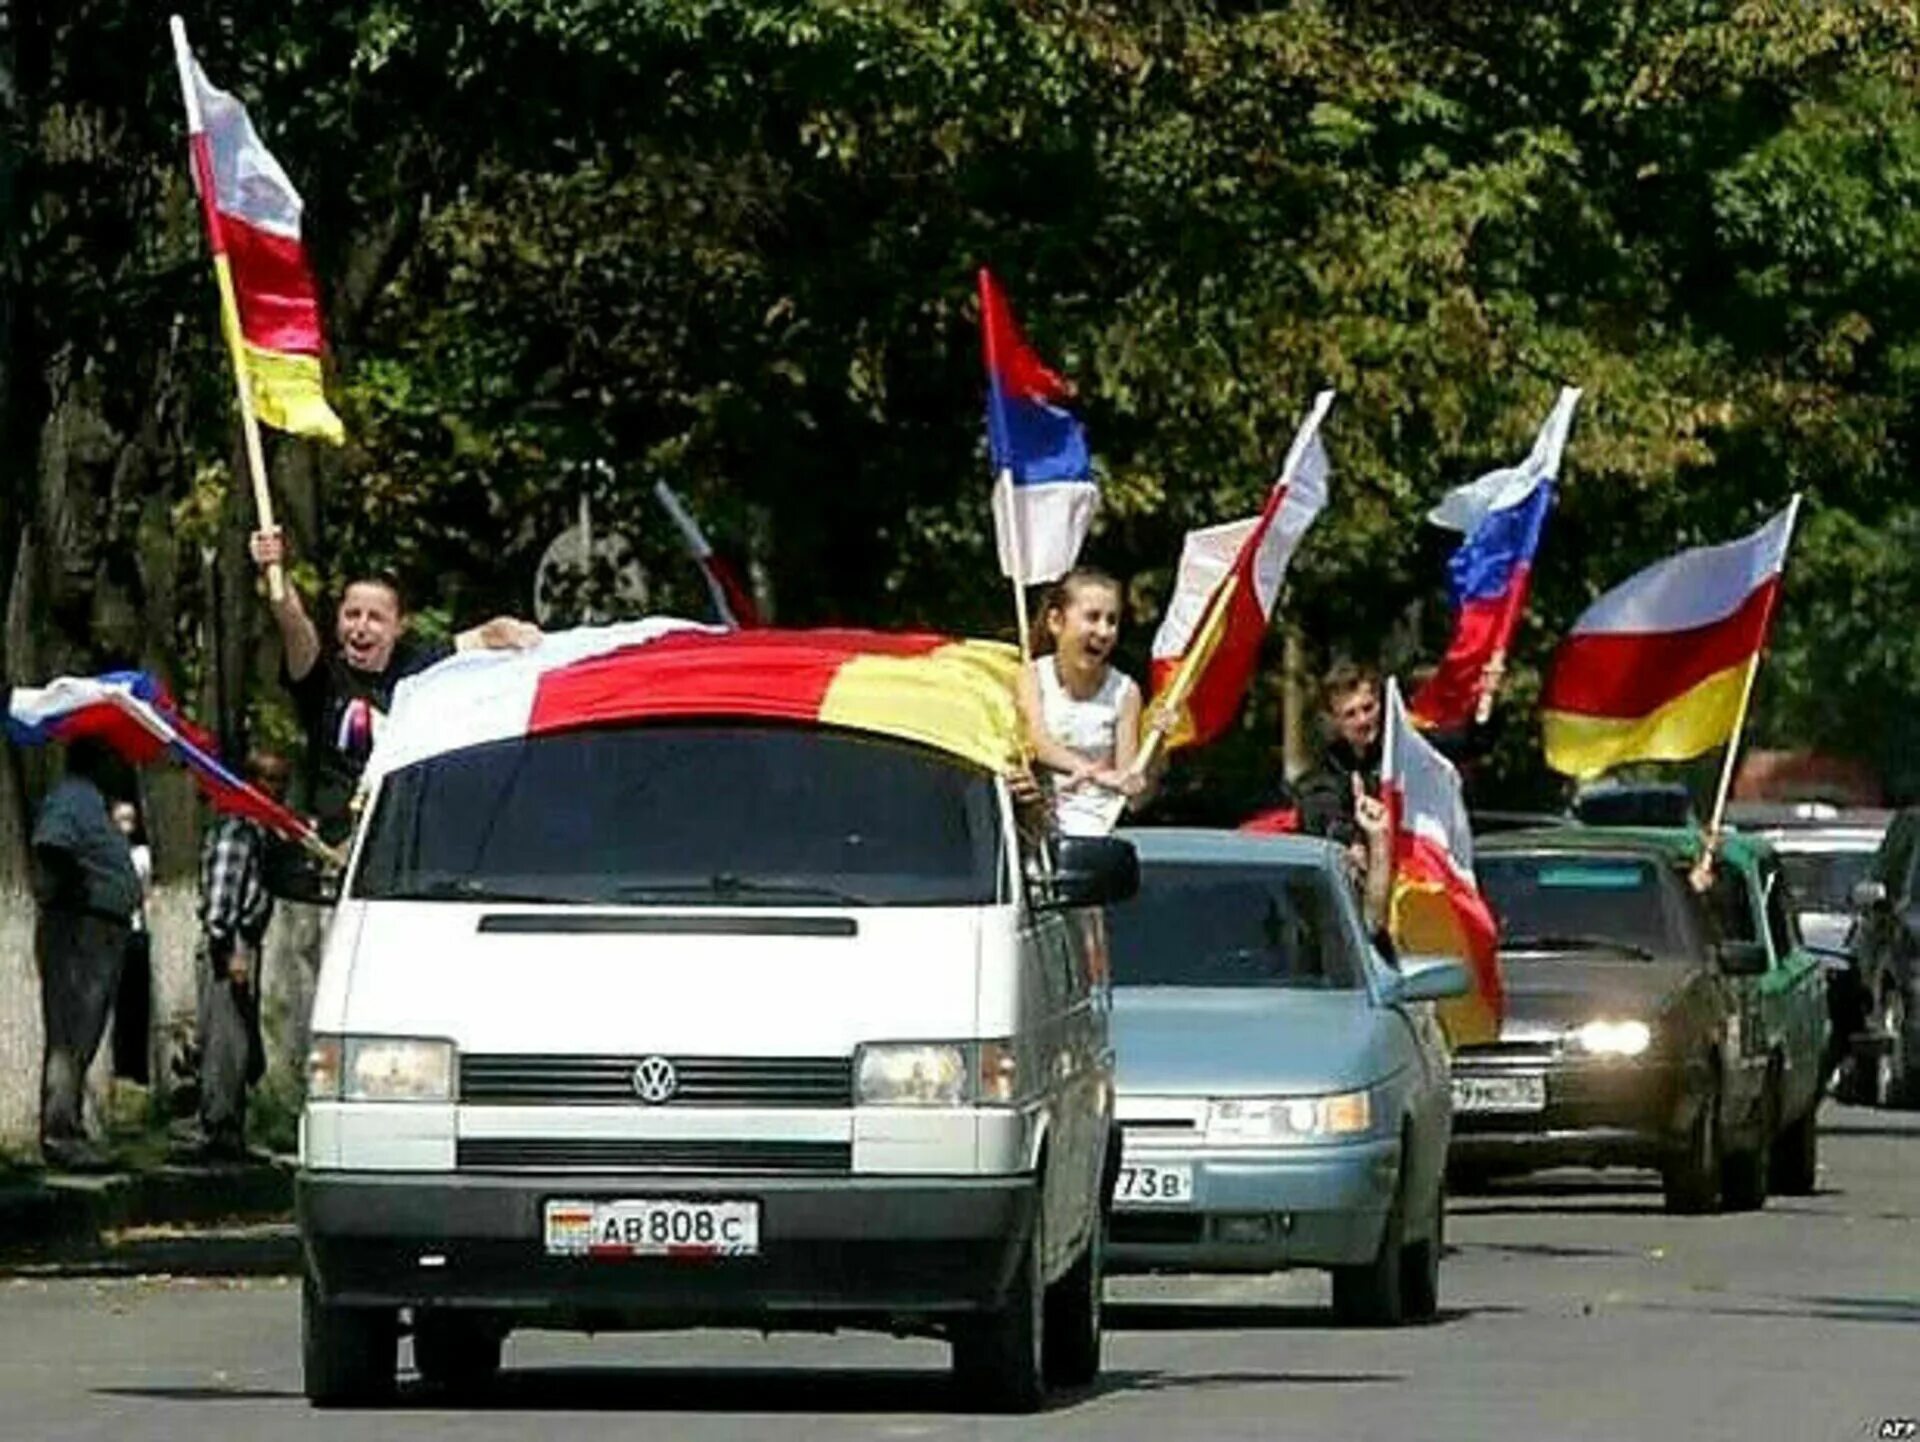 26 Августа 2008 Южная Осетия. 26 Августа 2008 независимость Южной Осетии. 17 Июля референдум в Южной Осетии. Признание Россией независимости Абхазии и Южной Осетии.